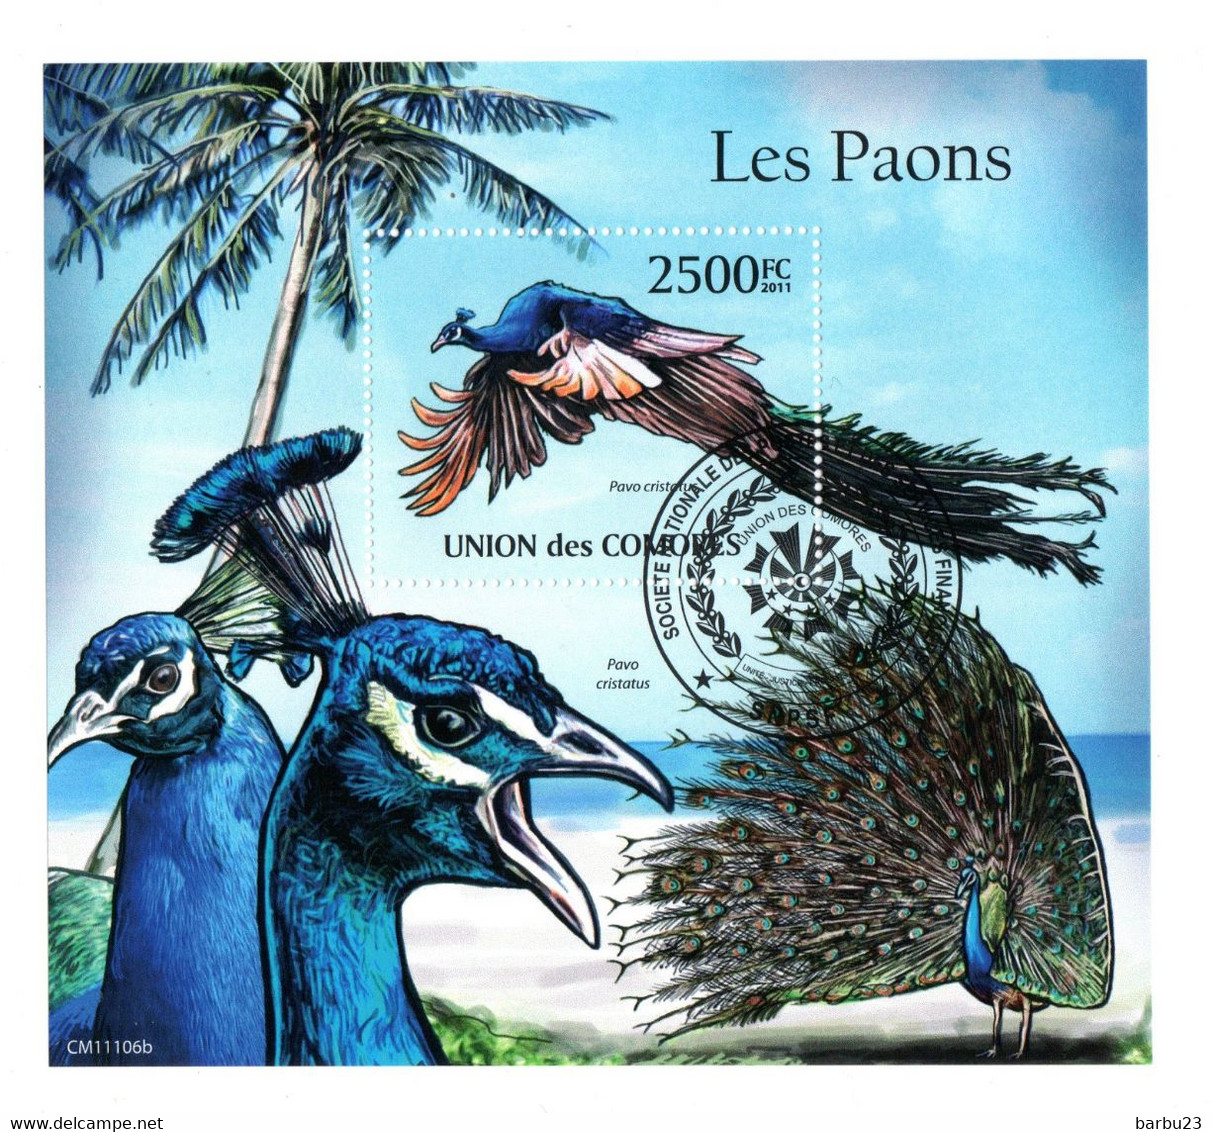 Les Paons Bloc De L'Union Des Comores - Pauwen